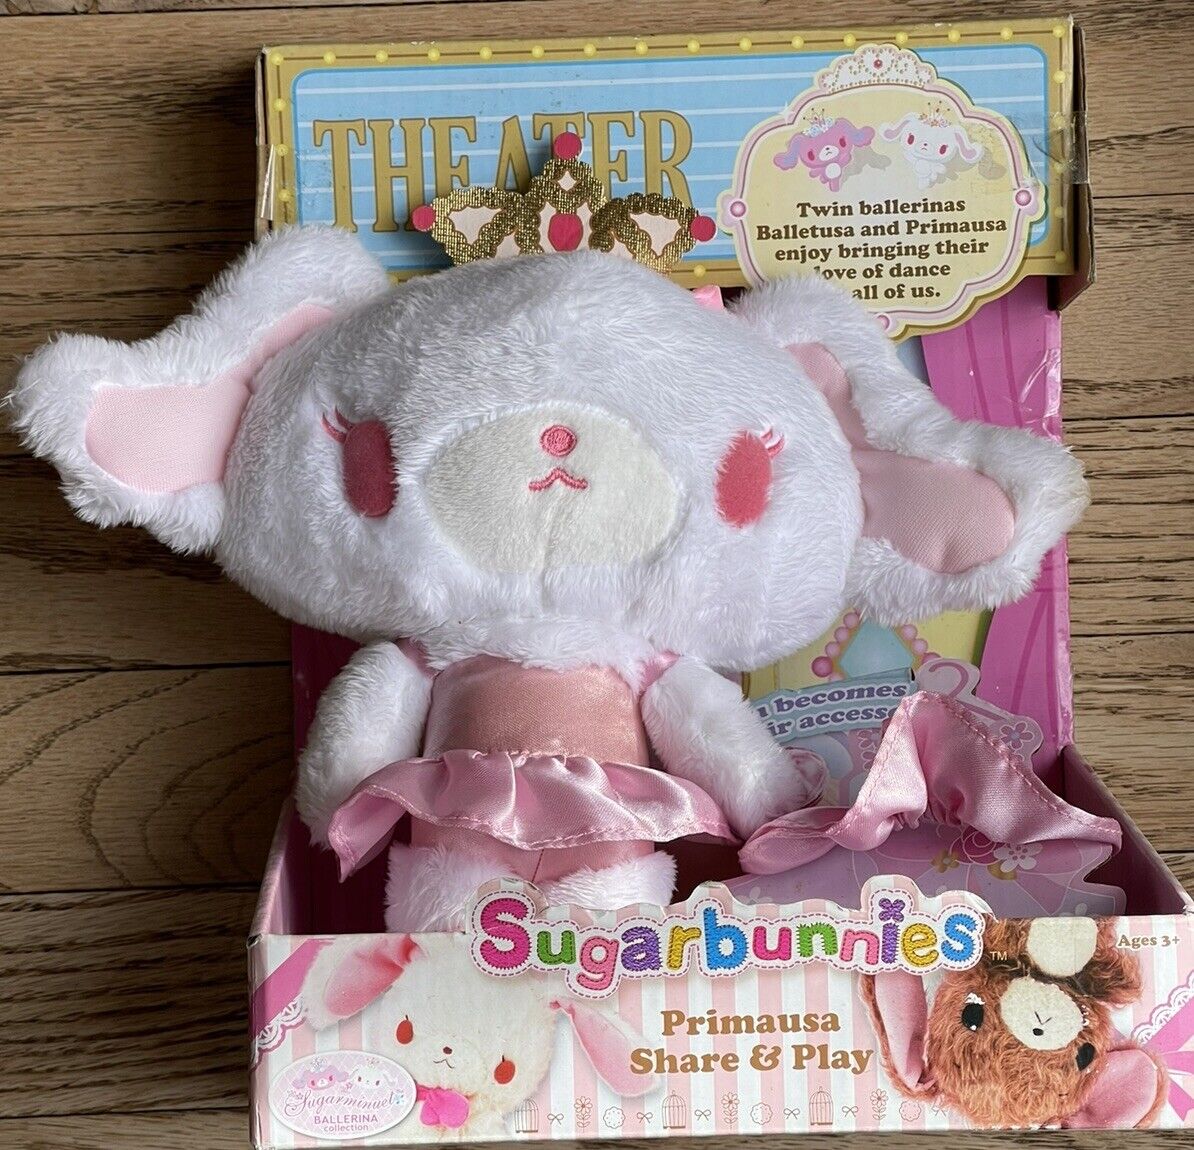 NEW In Box RARE Sanrio Sugarbunnies Sugarminuet Theater Soft Plush Toy 2010